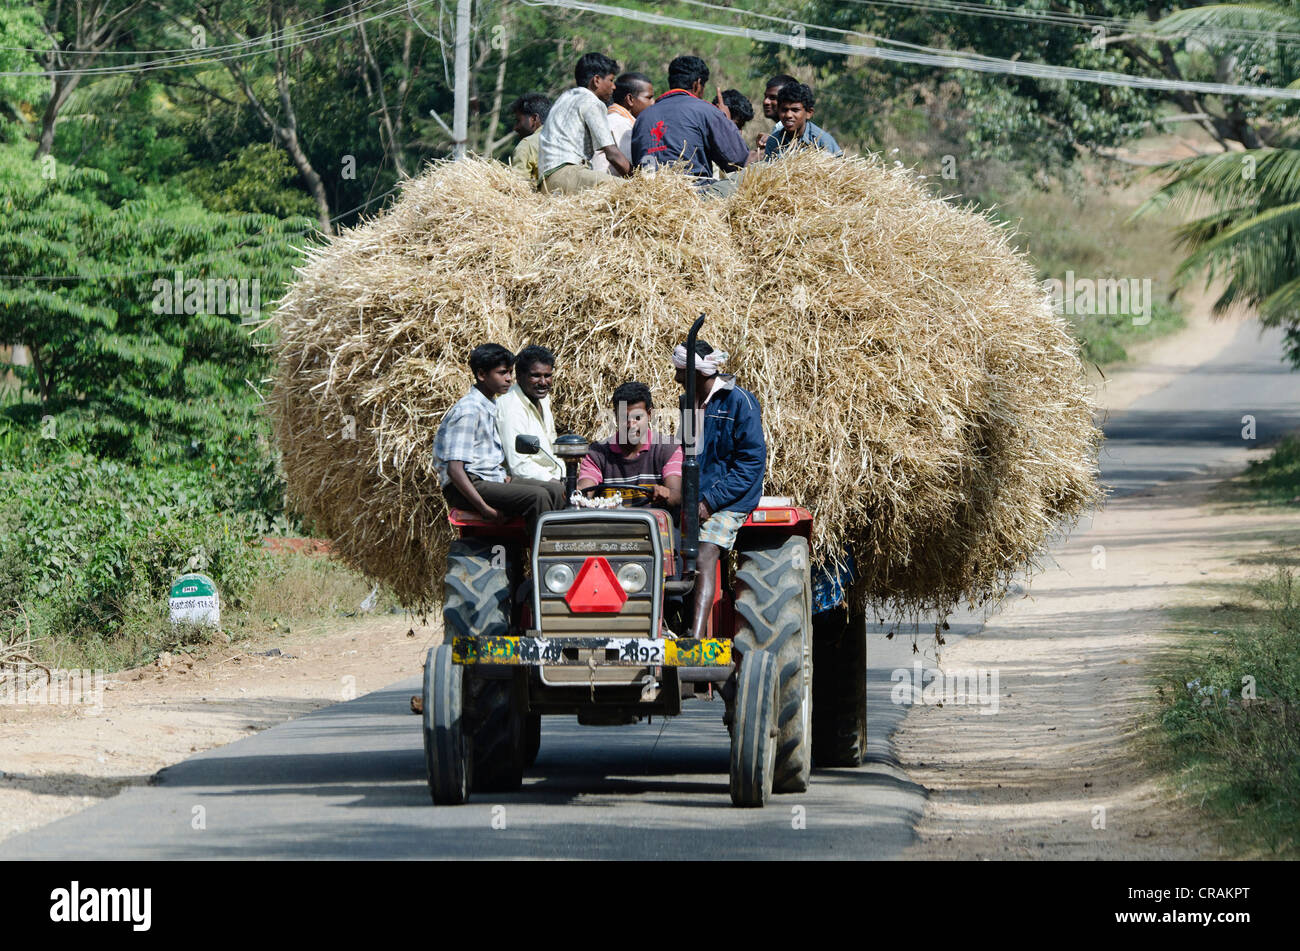 Indiens voyageant sur un tracteur chargé de foin, district de Mysore, Karnataka, Inde du Sud, Inde, Asie Banque D'Images